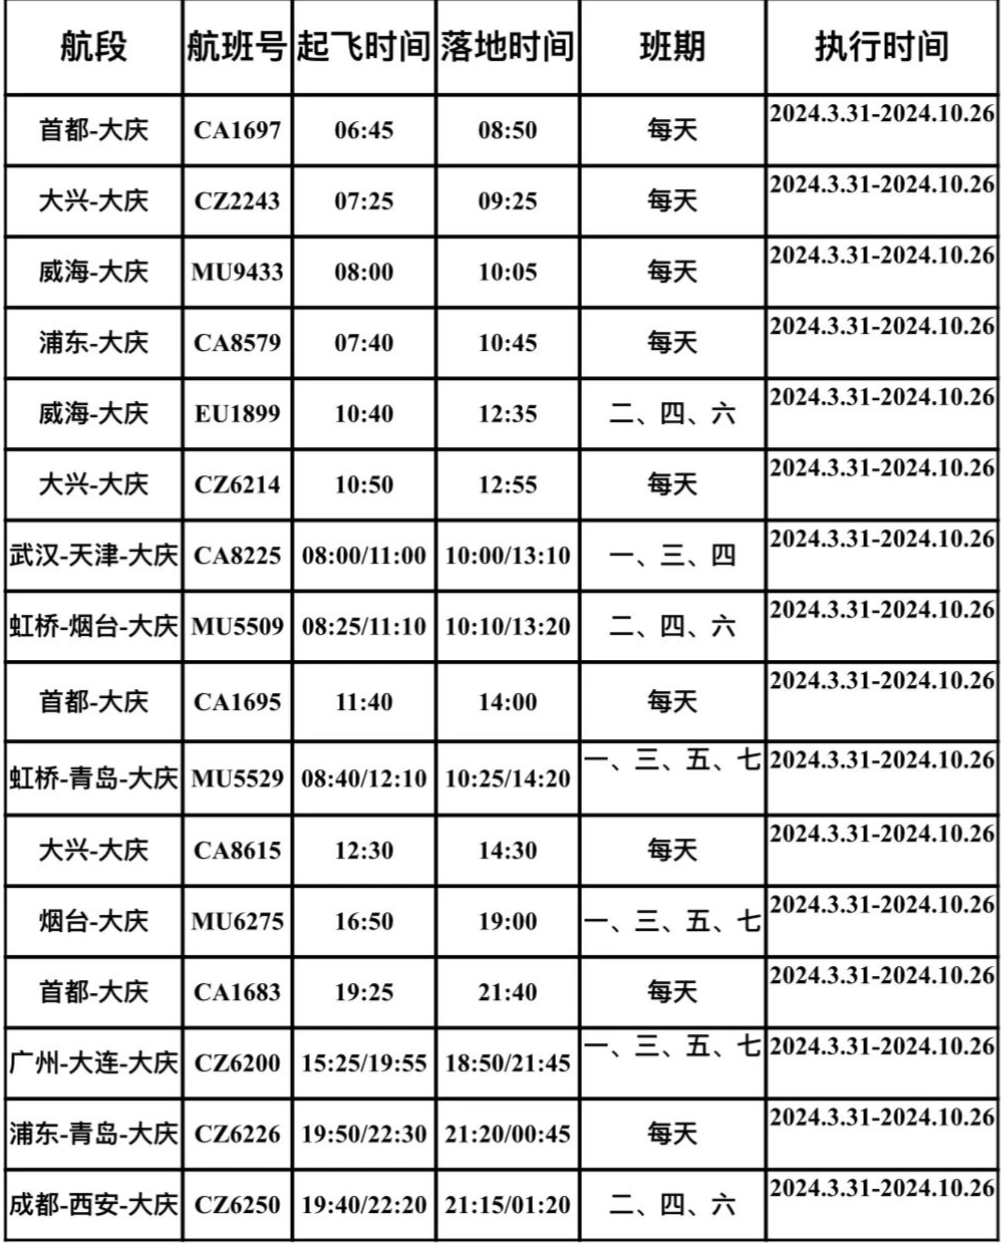 日执行)大庆机场航班时刻表根据民航局《民航航班时刻管理办法》规定